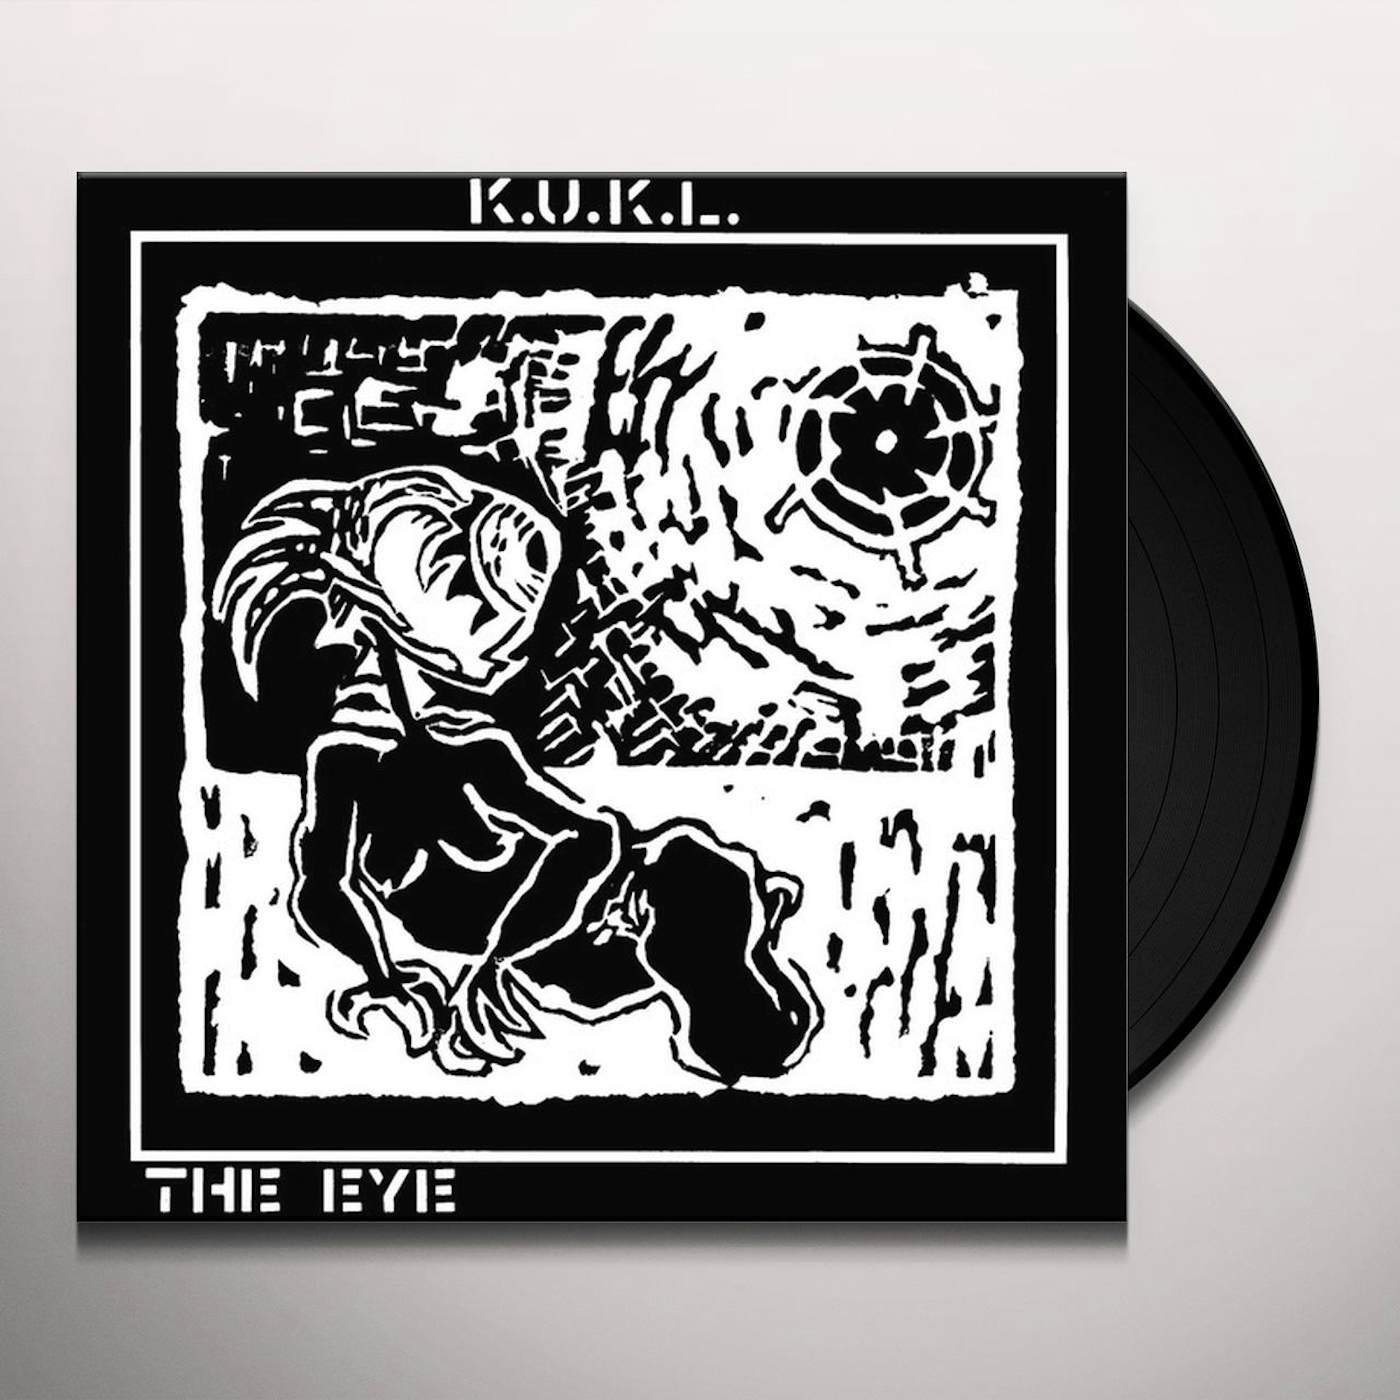 K.U.K.L. The Eye (Lp Reissue) Vinyl Record